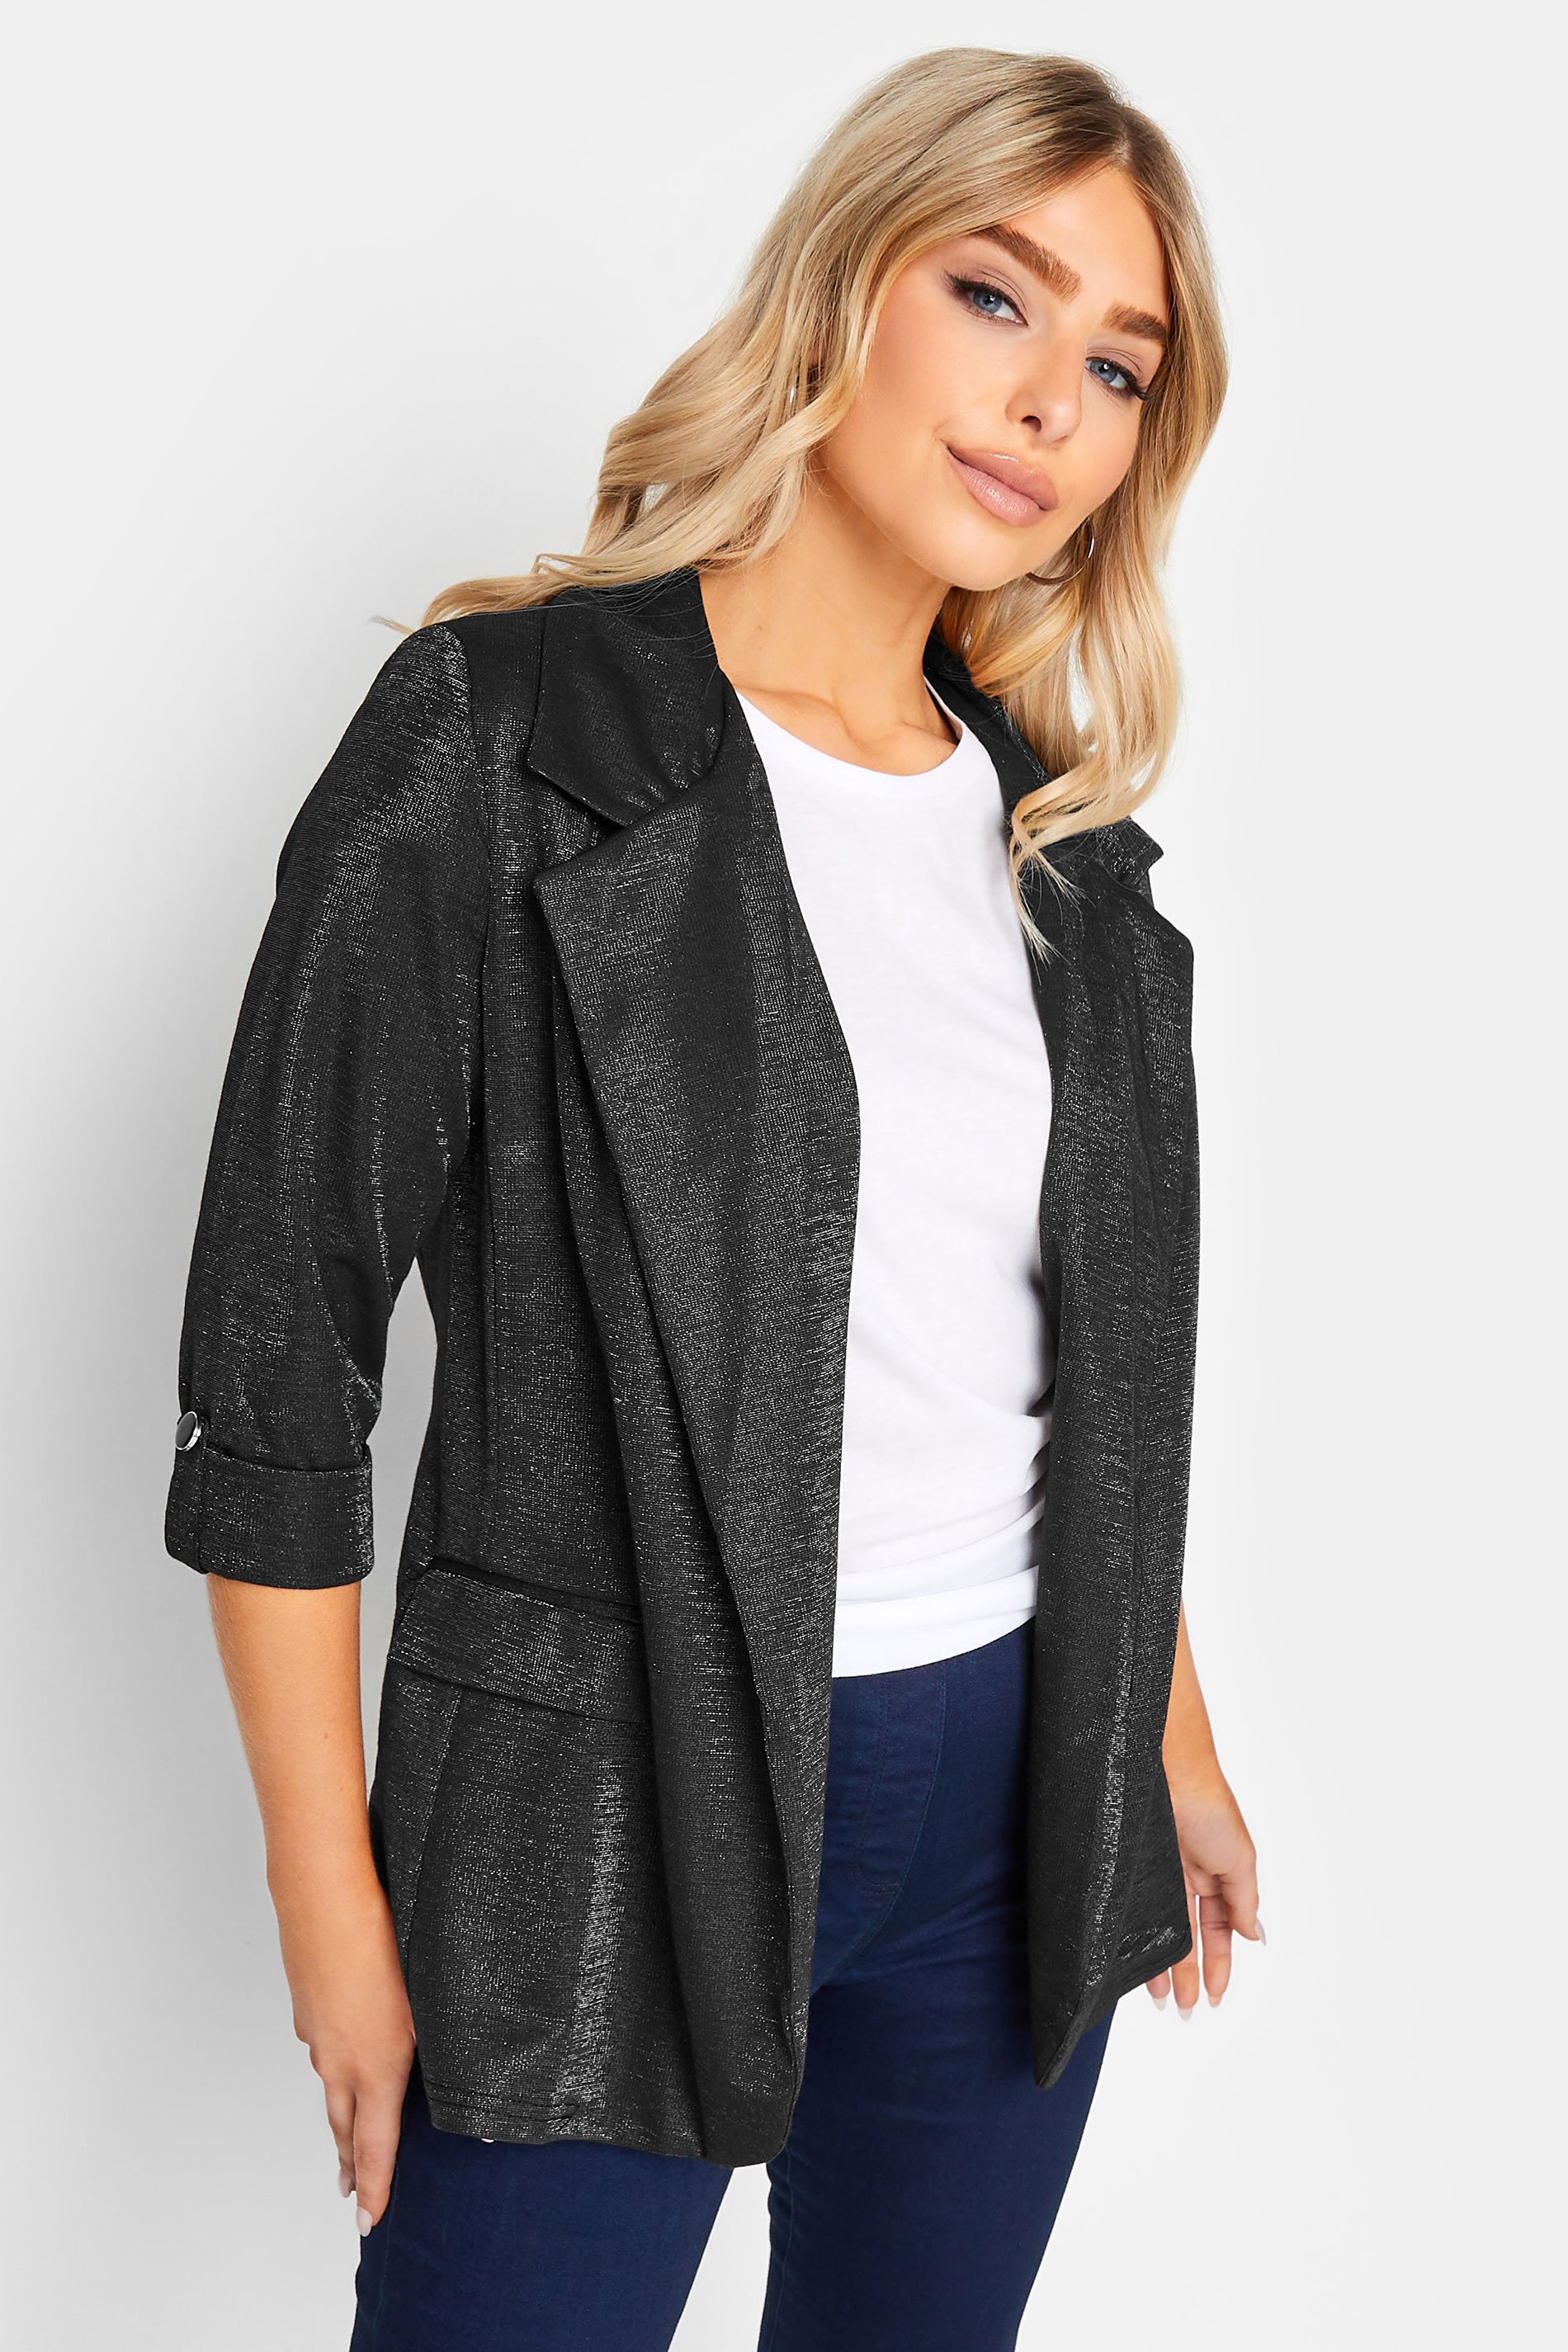 NWOT Womens Size Medium ZARA Black Full Zip Shimmer Bomber Jacket | eBay